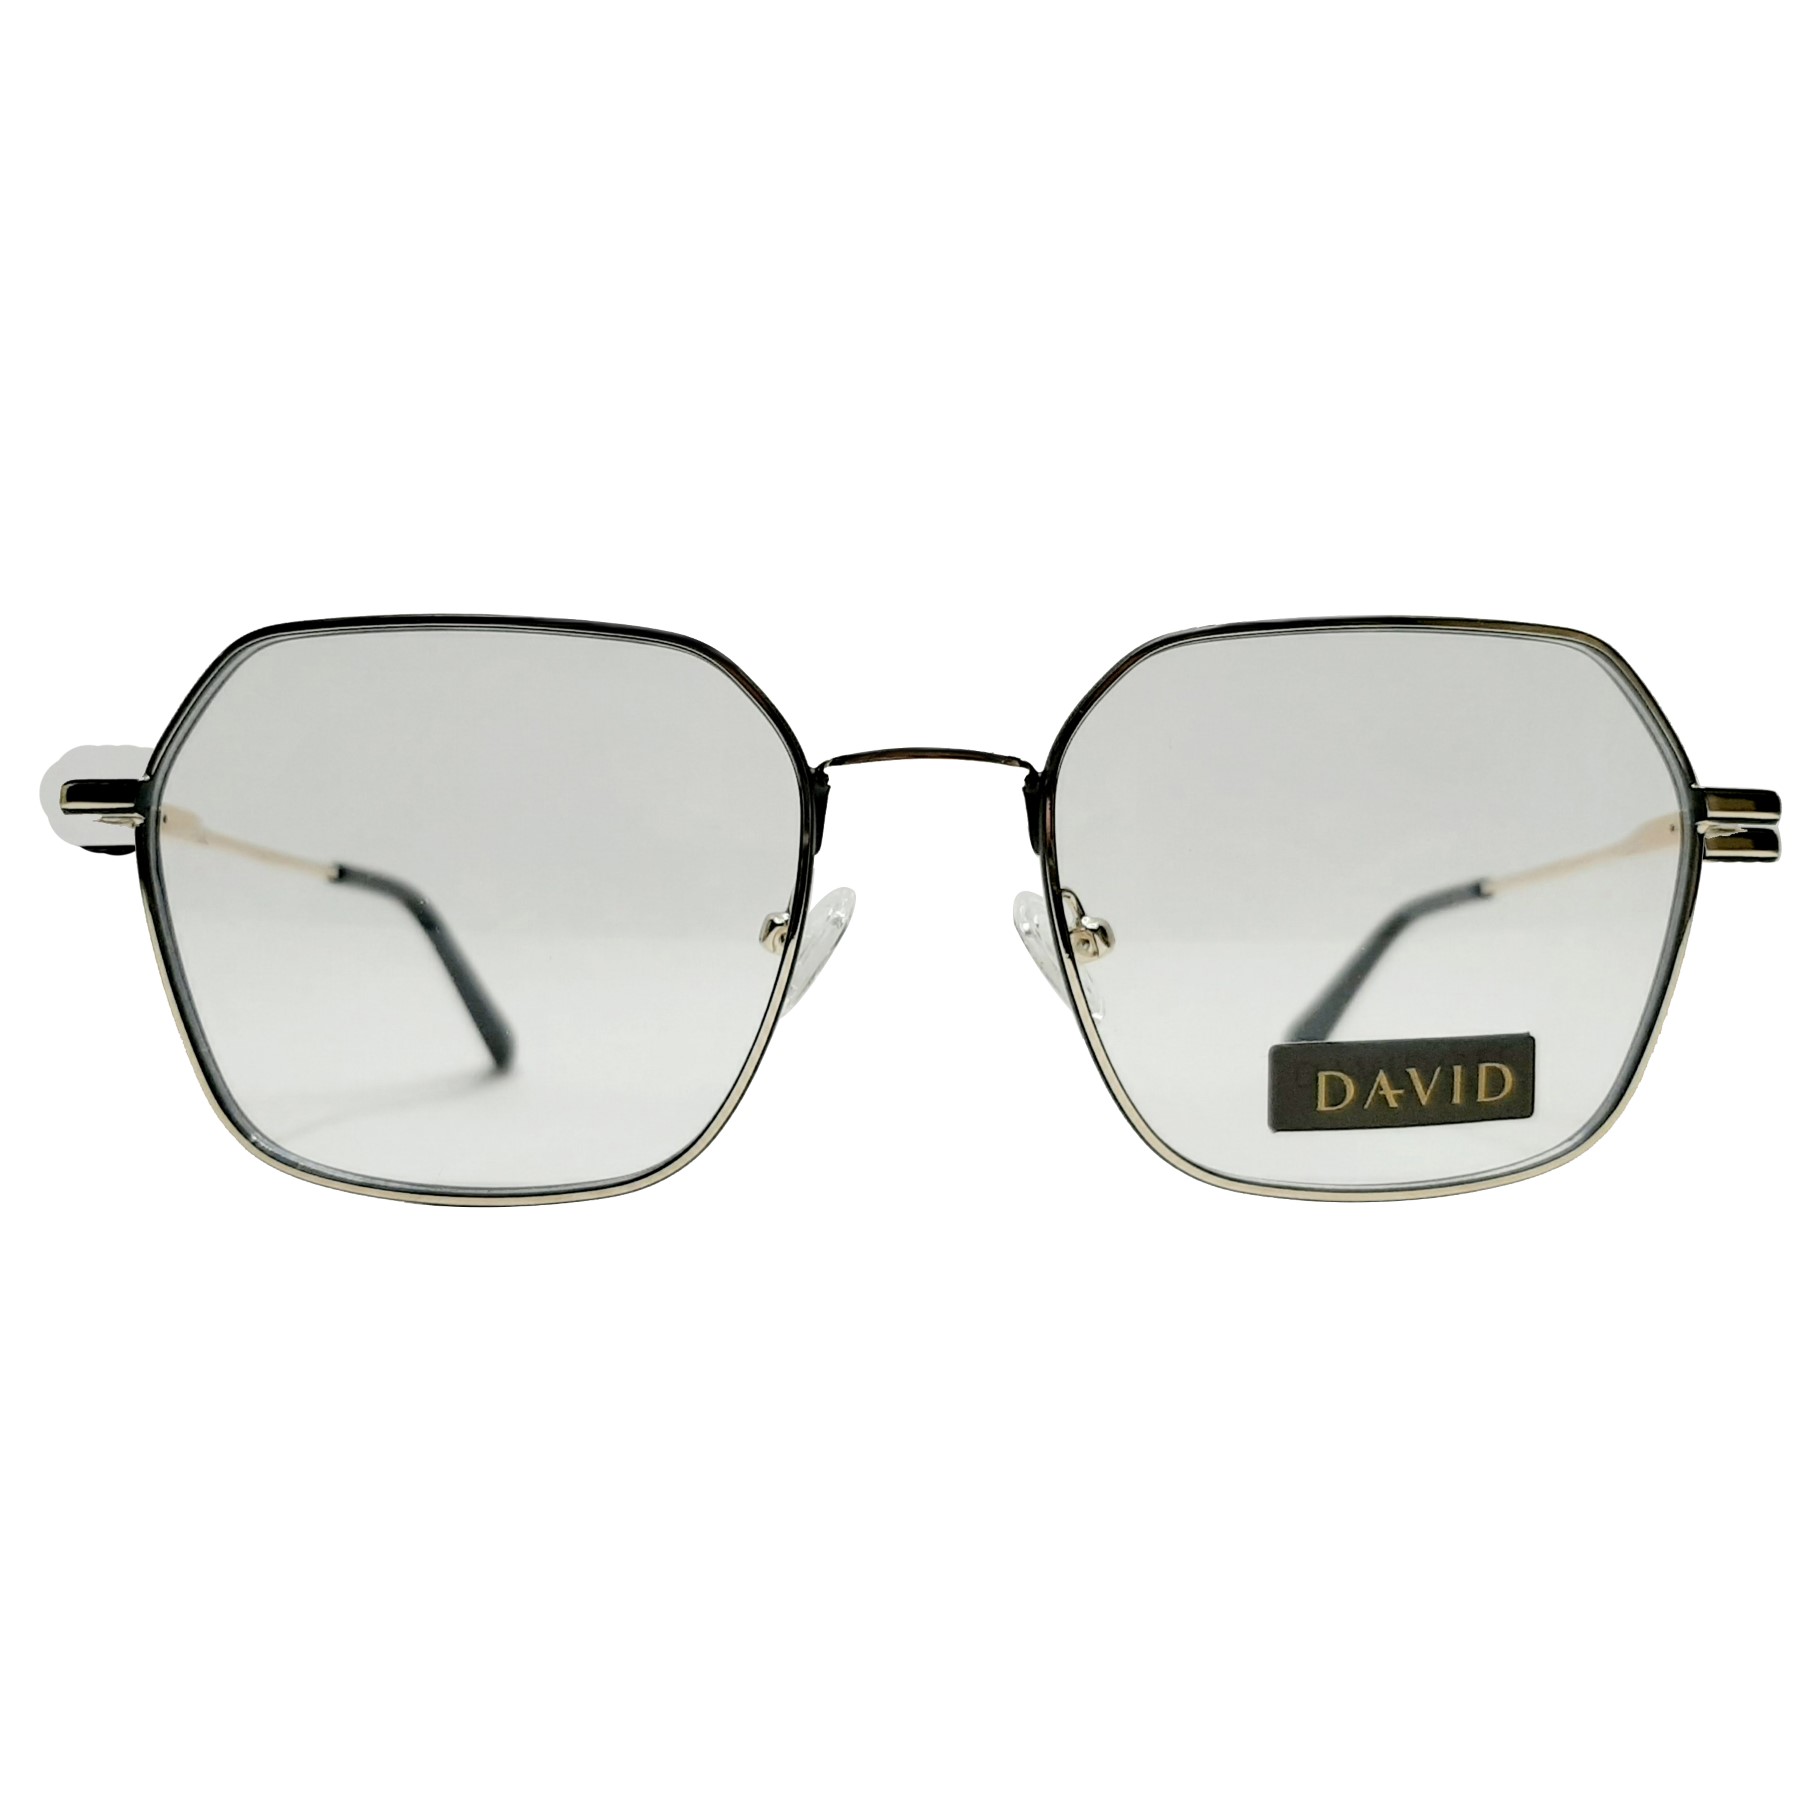 فریم عینک طبی داویدف مدل YJ0193c1